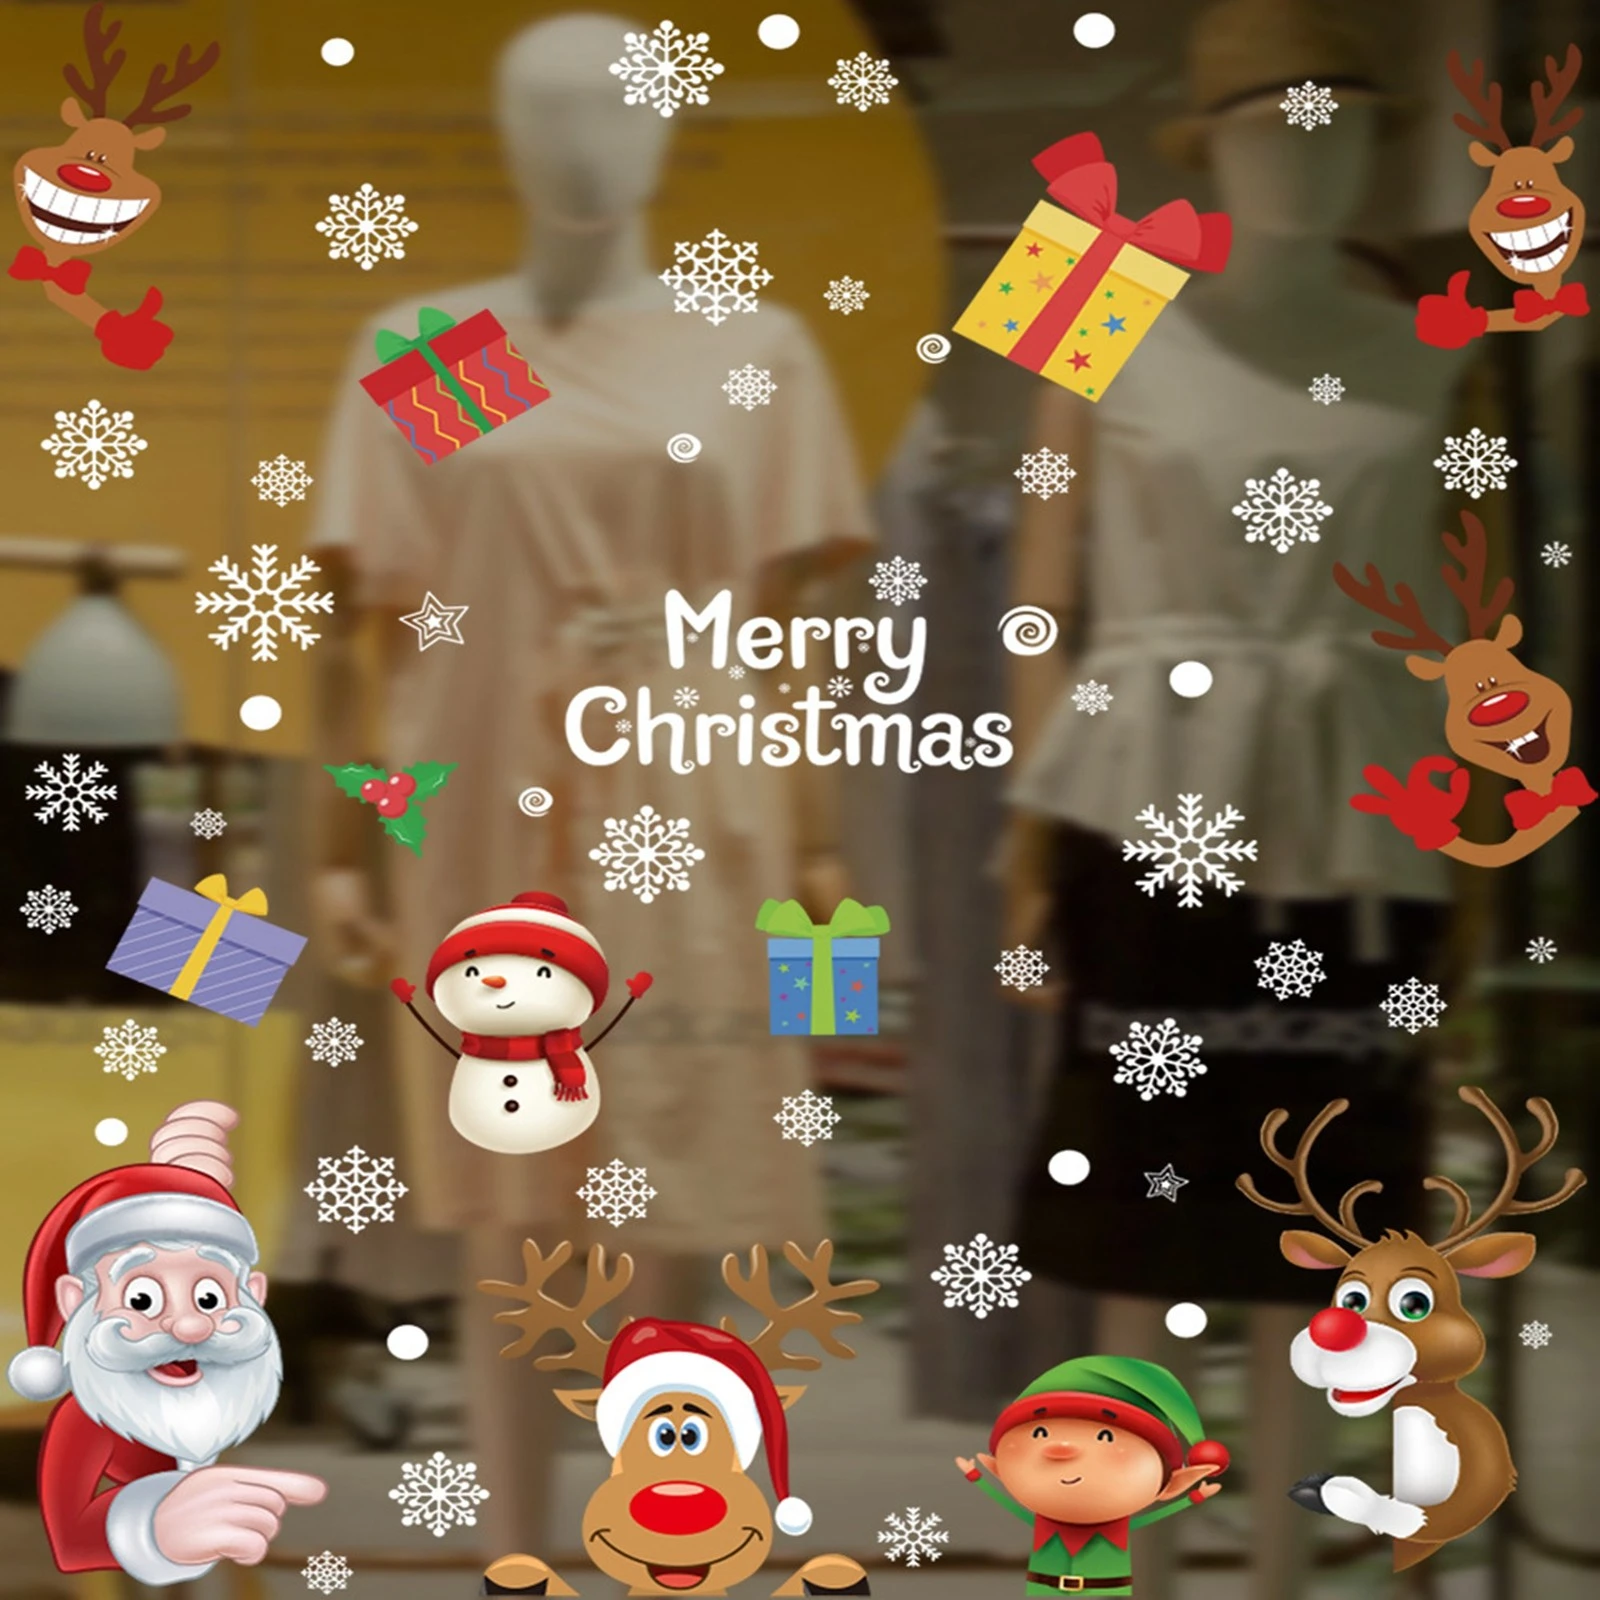 verwijderen Herrie roekeloos Leuke Kerst Raamstickers Sneeuwvlok Kerstman Gluren Kerst Vastklampt Voor  Glas Kerst Winter Stickers Home Decor|Wandstickers| - AliExpress